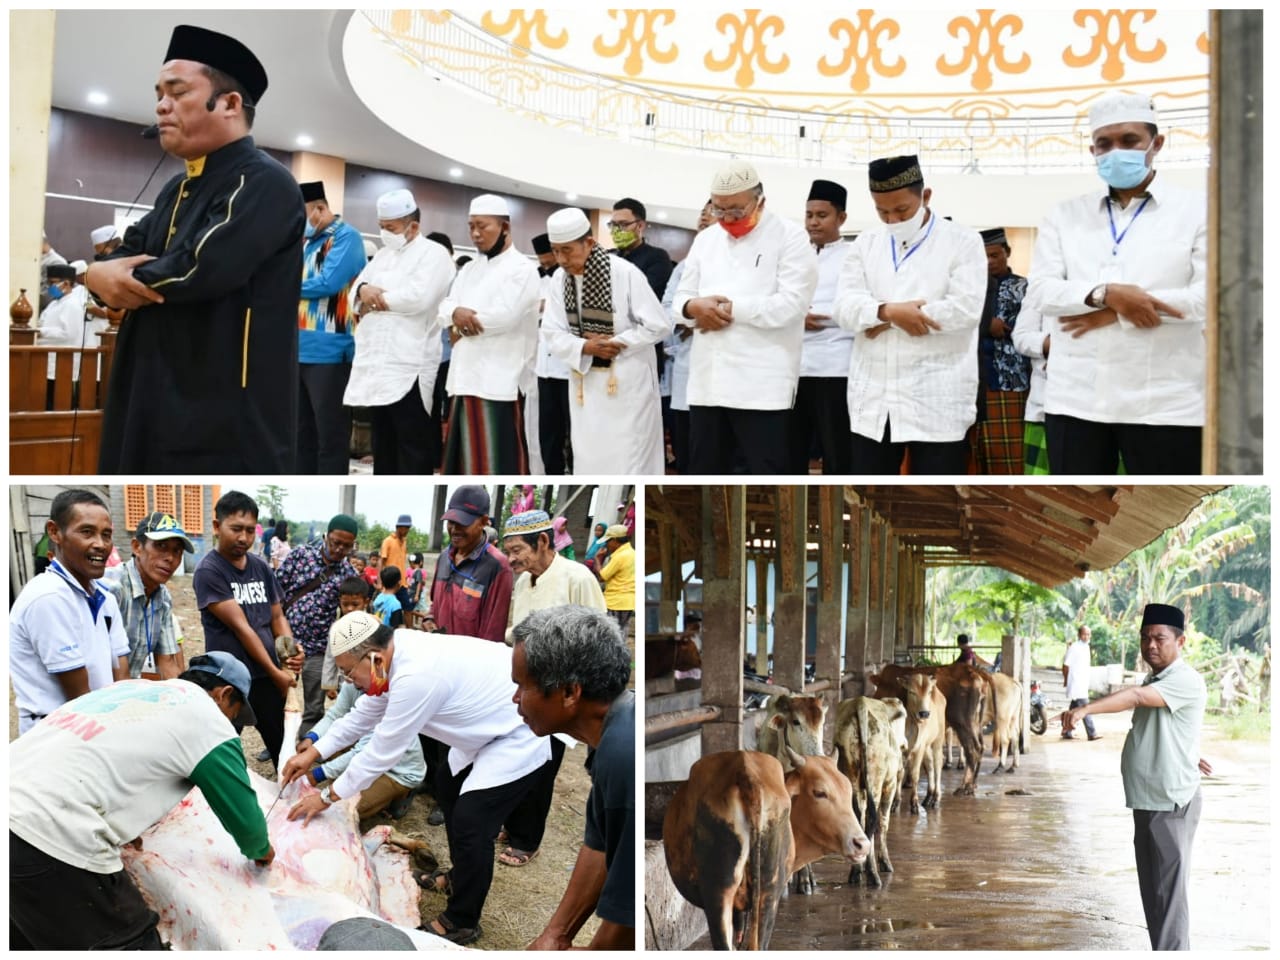 Bupati Ir H Soekirman Bersama Ratusan Masyarakat  Laksanakan Shalat Idul Adha 1441 H di Masjid Agung